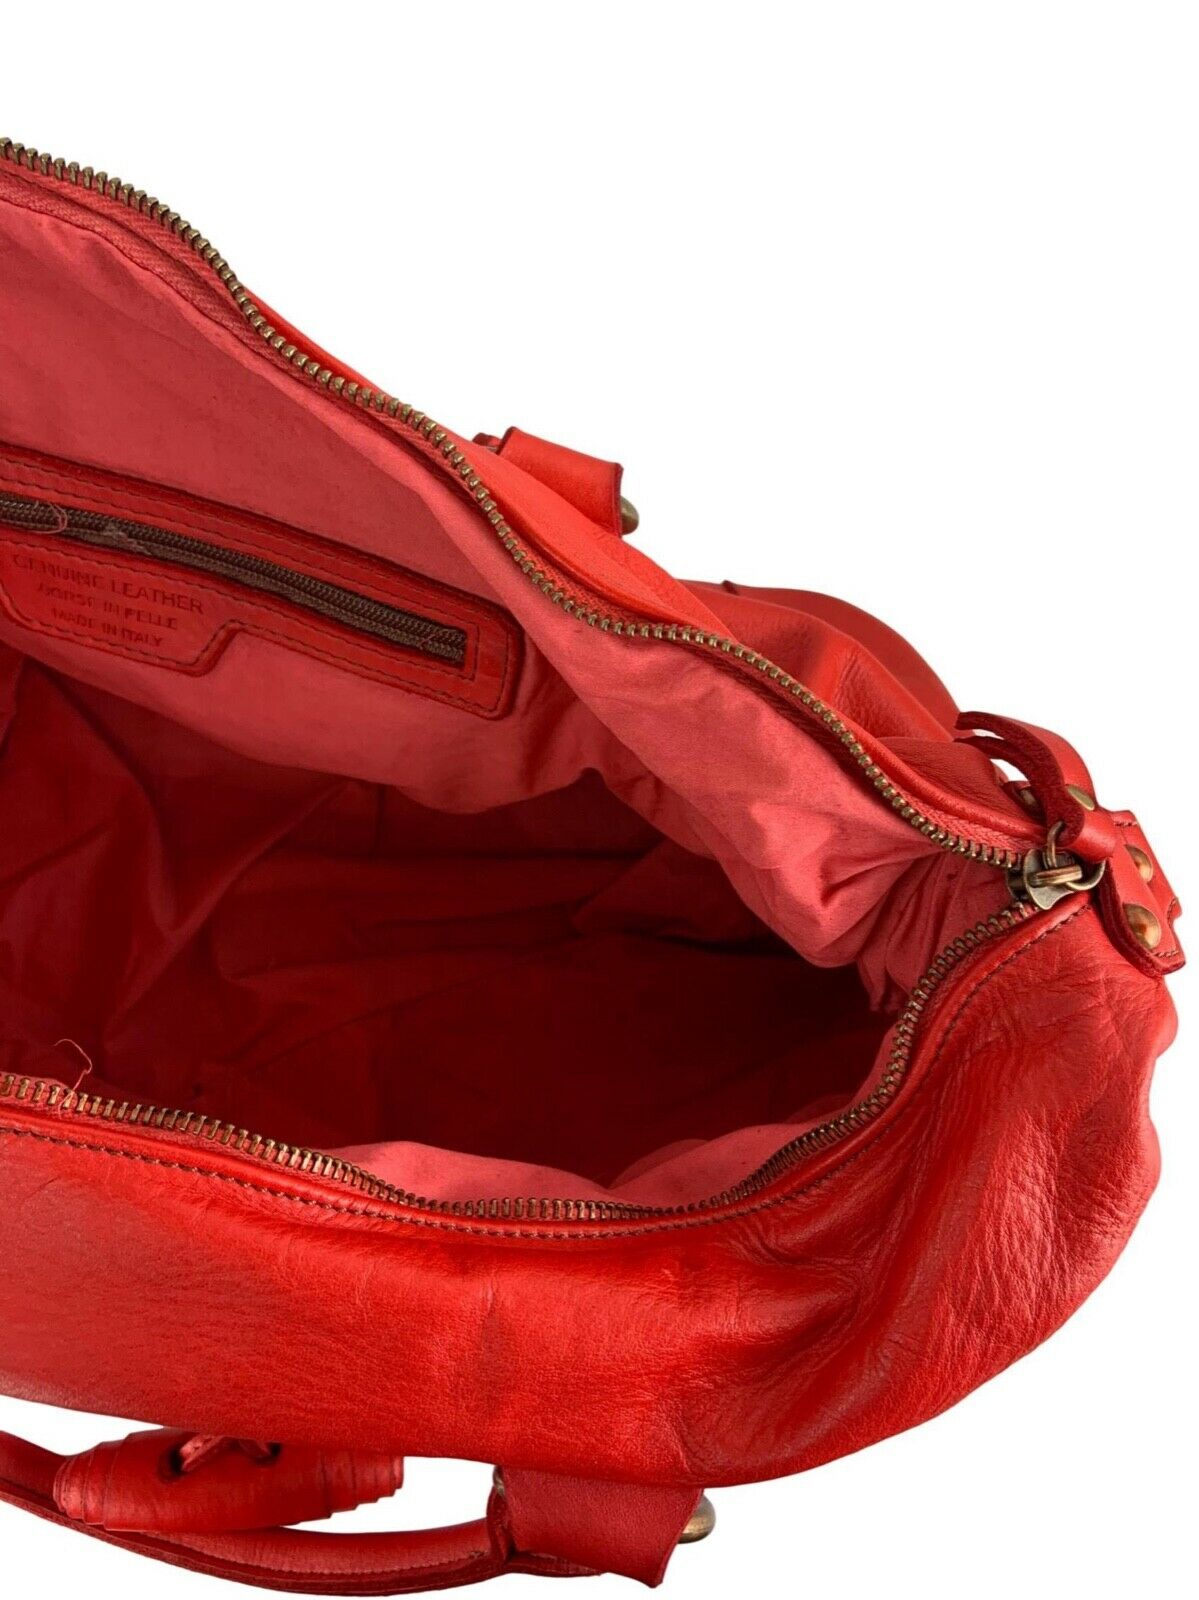 BZNA Bag Auri Taupe Italy Designer Damen Handtasche Schultertasche Tasche